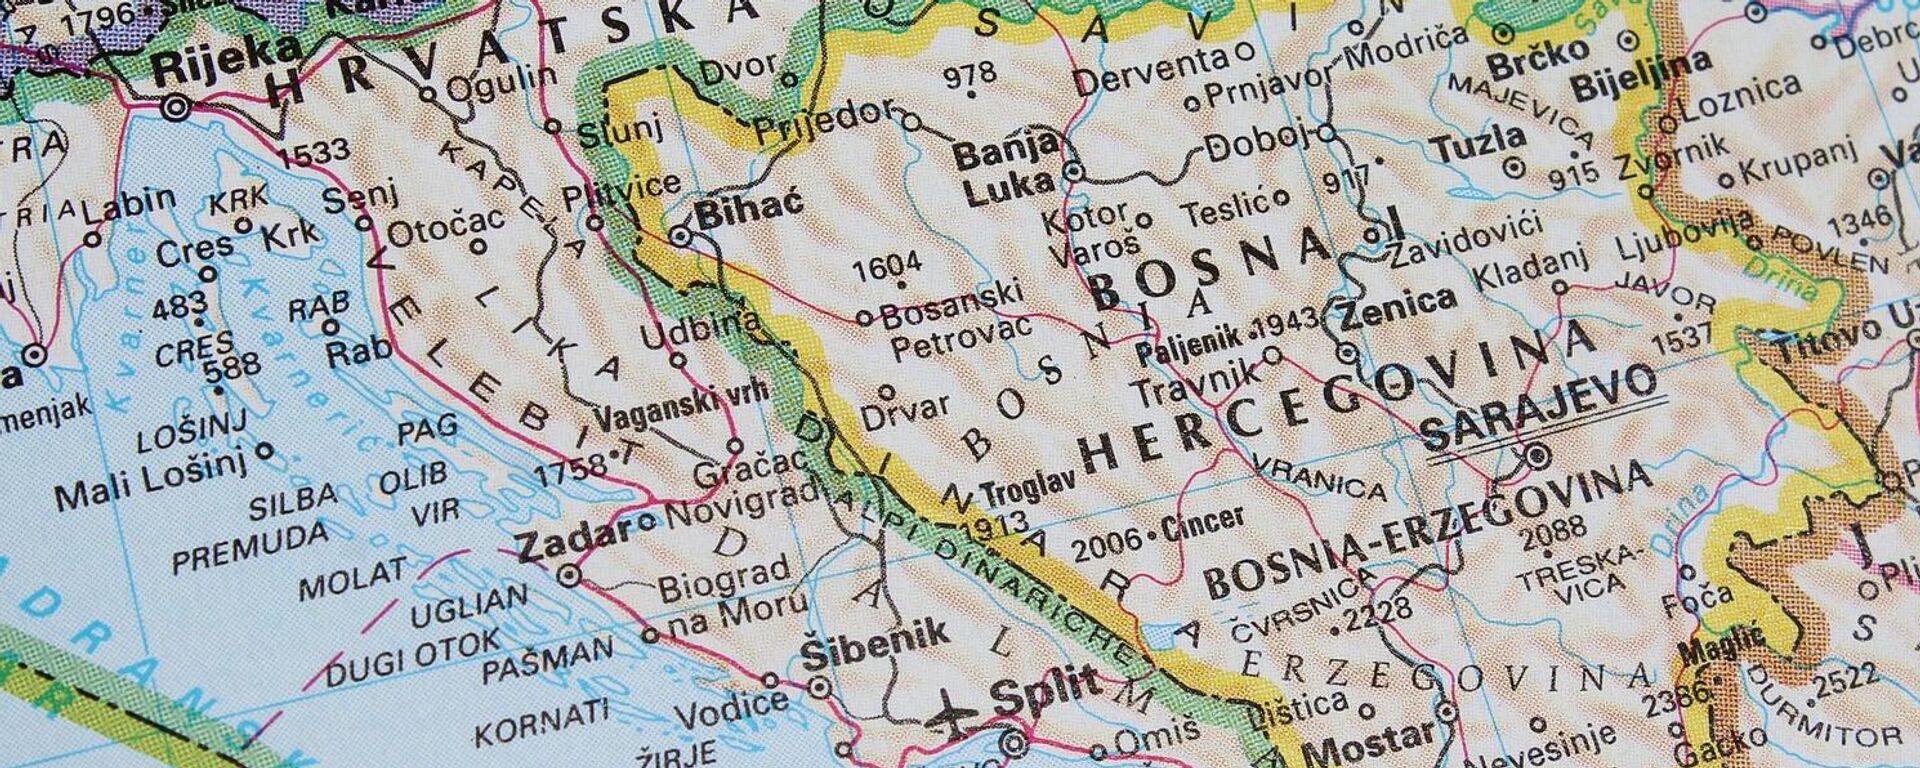 Bosna i Hercegovina - Sputnik Srbija, 1920, 29.07.2021